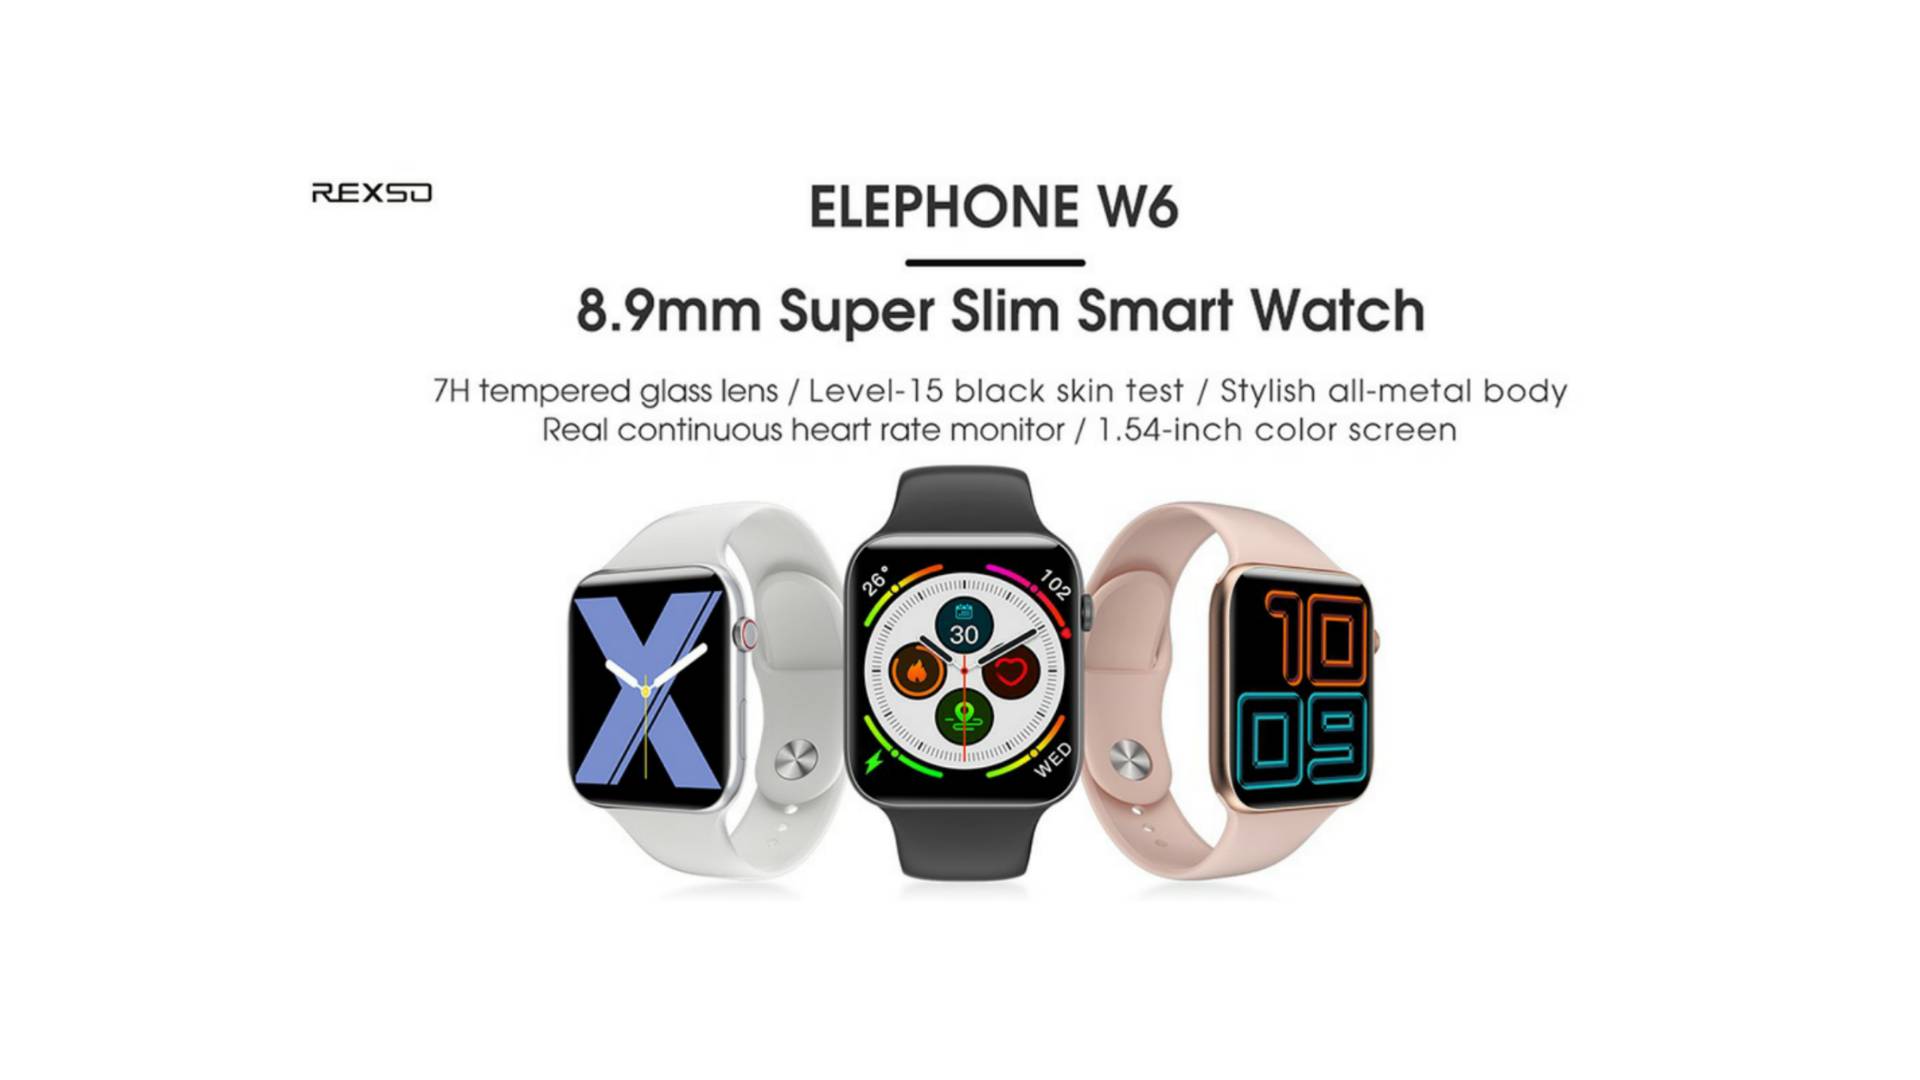 Itt az új Apple Watch, akarjuk mondani az Elephone W6 [videó]